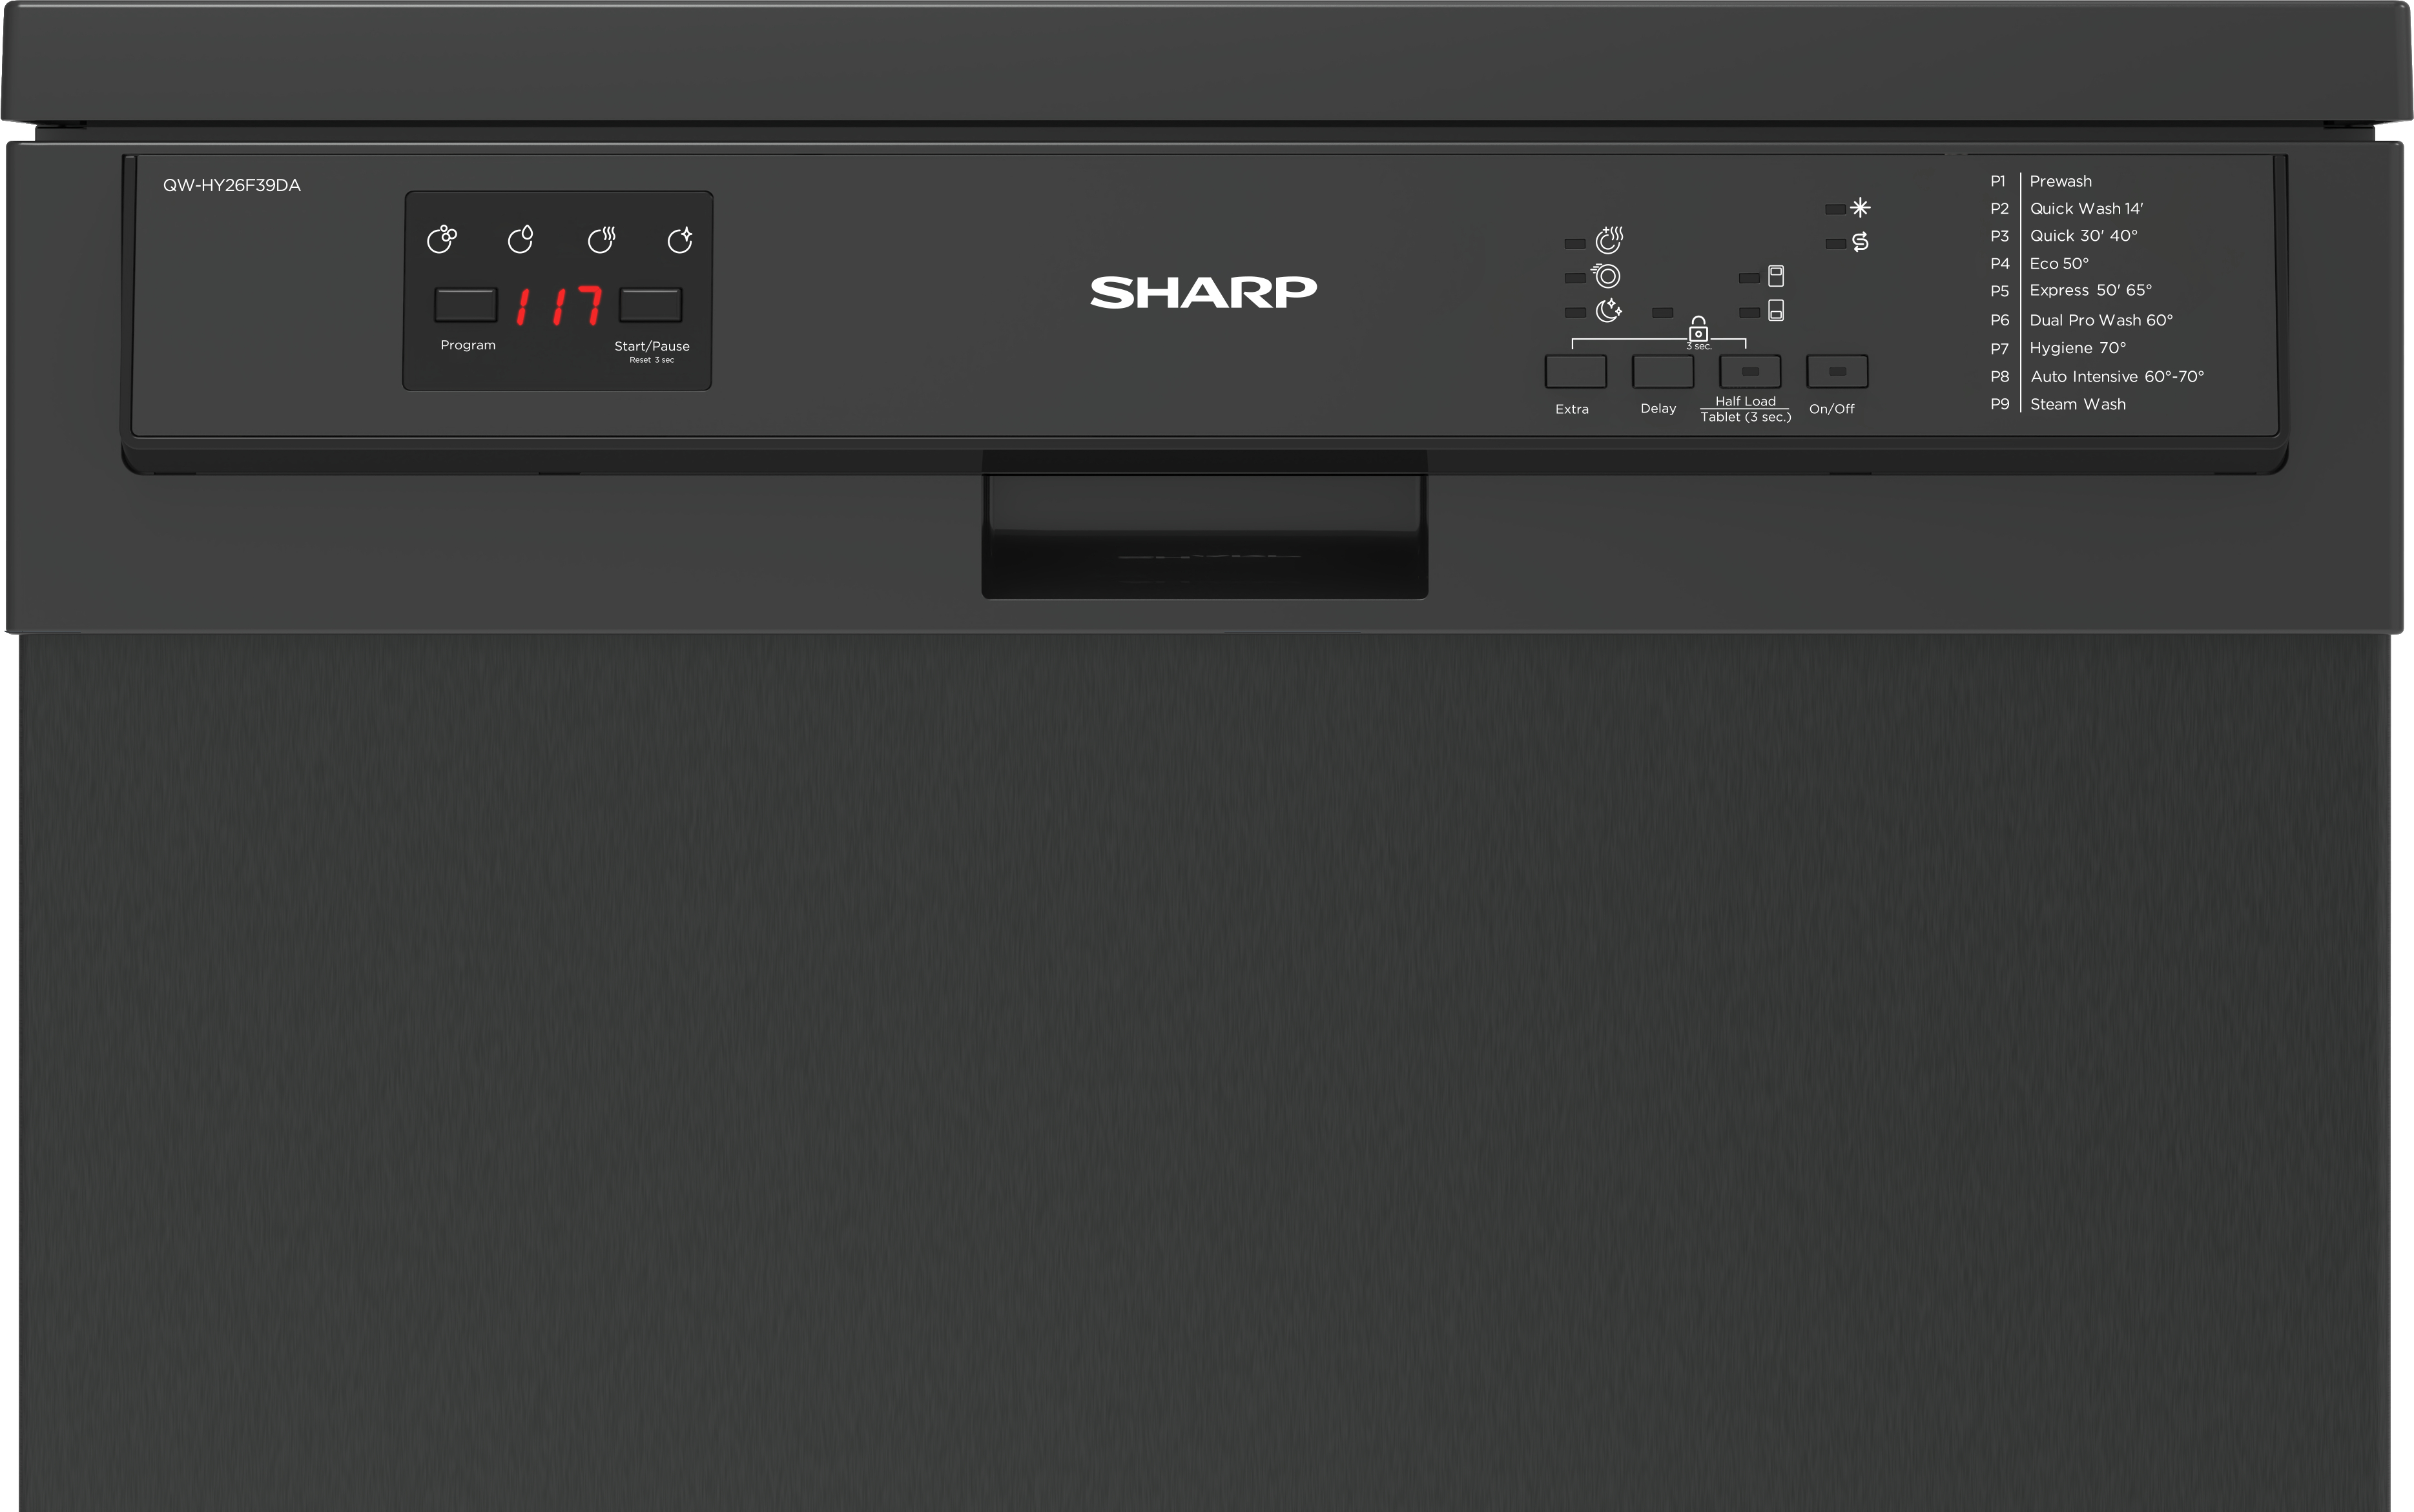 SHARP QW-HY26F39DA-DE Geschirrspüler (Freistehend mit 39 600 mm dB breit, (A), Unterbaumöglichkeit, D)